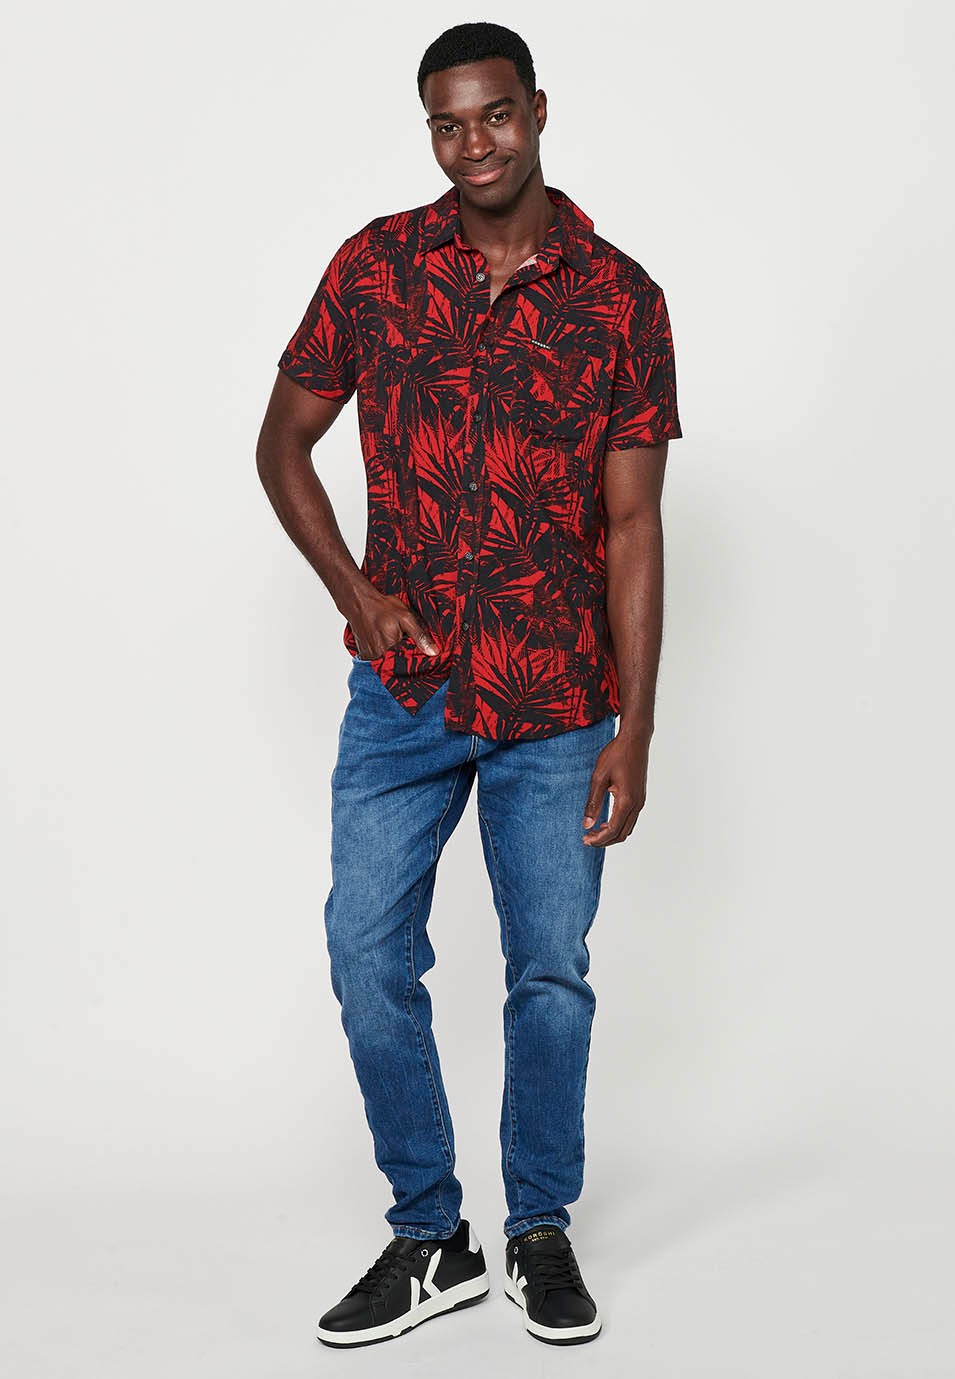 Chemise à manches courtes pour hommes, imprimé floral rouge, fermeture boutonnée sur le devant 3